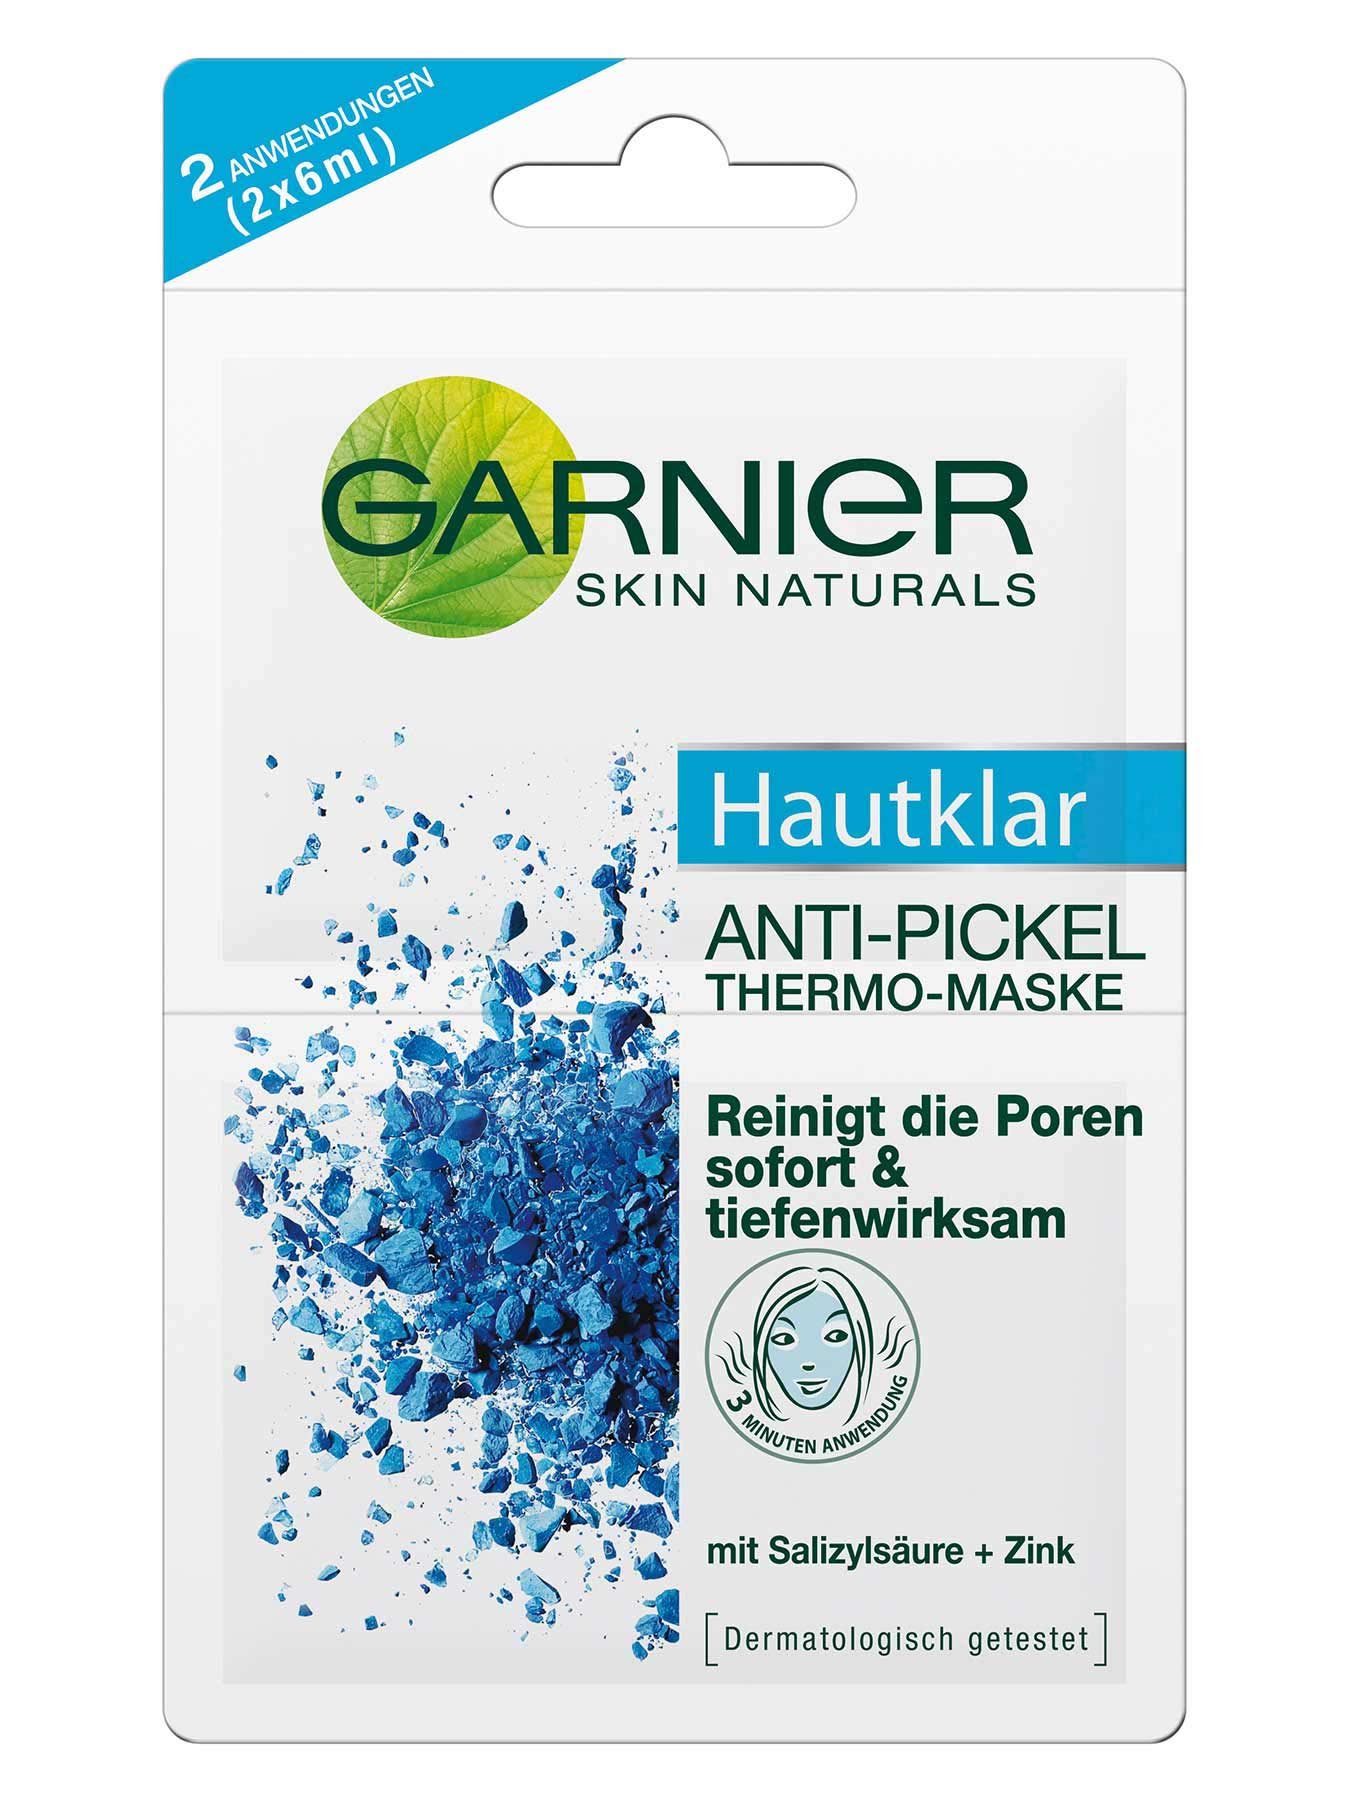 Anti-Pickel-Thermo-Maske-Hautklar-Anti-Pickel-12ml-Vorderseite-Garnier-Deutschland-gr